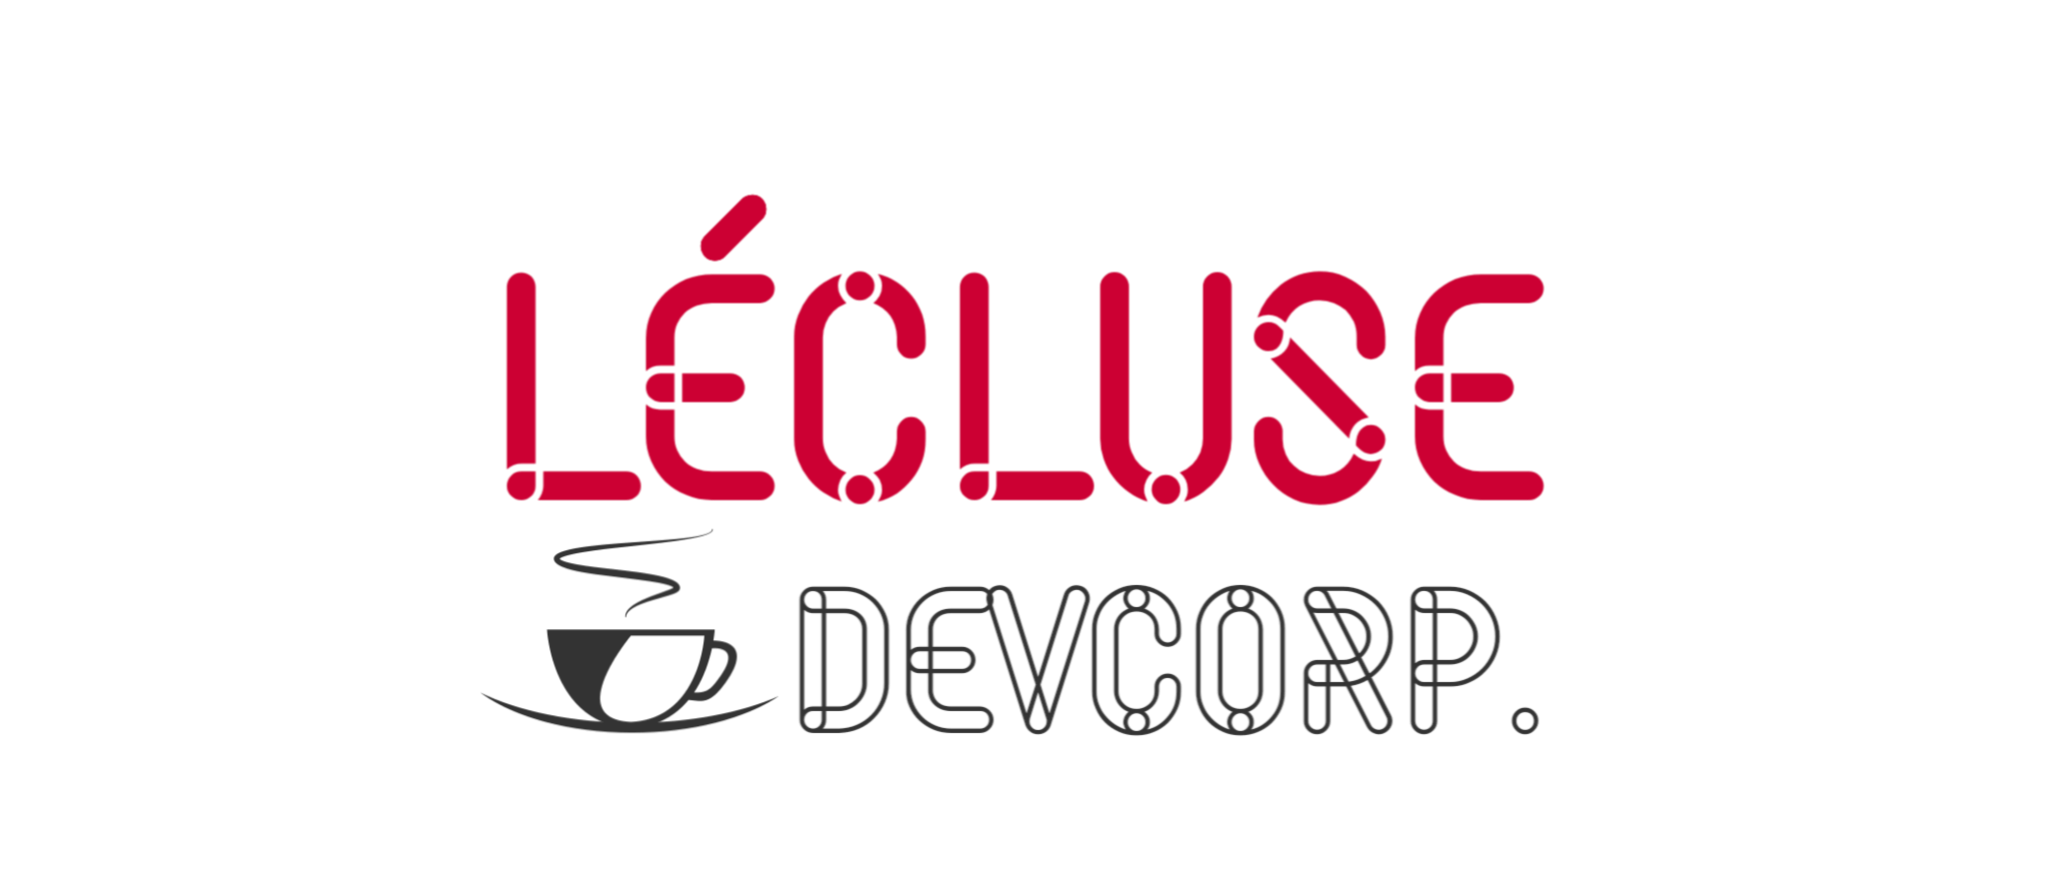 LECLUSE DevCorp.